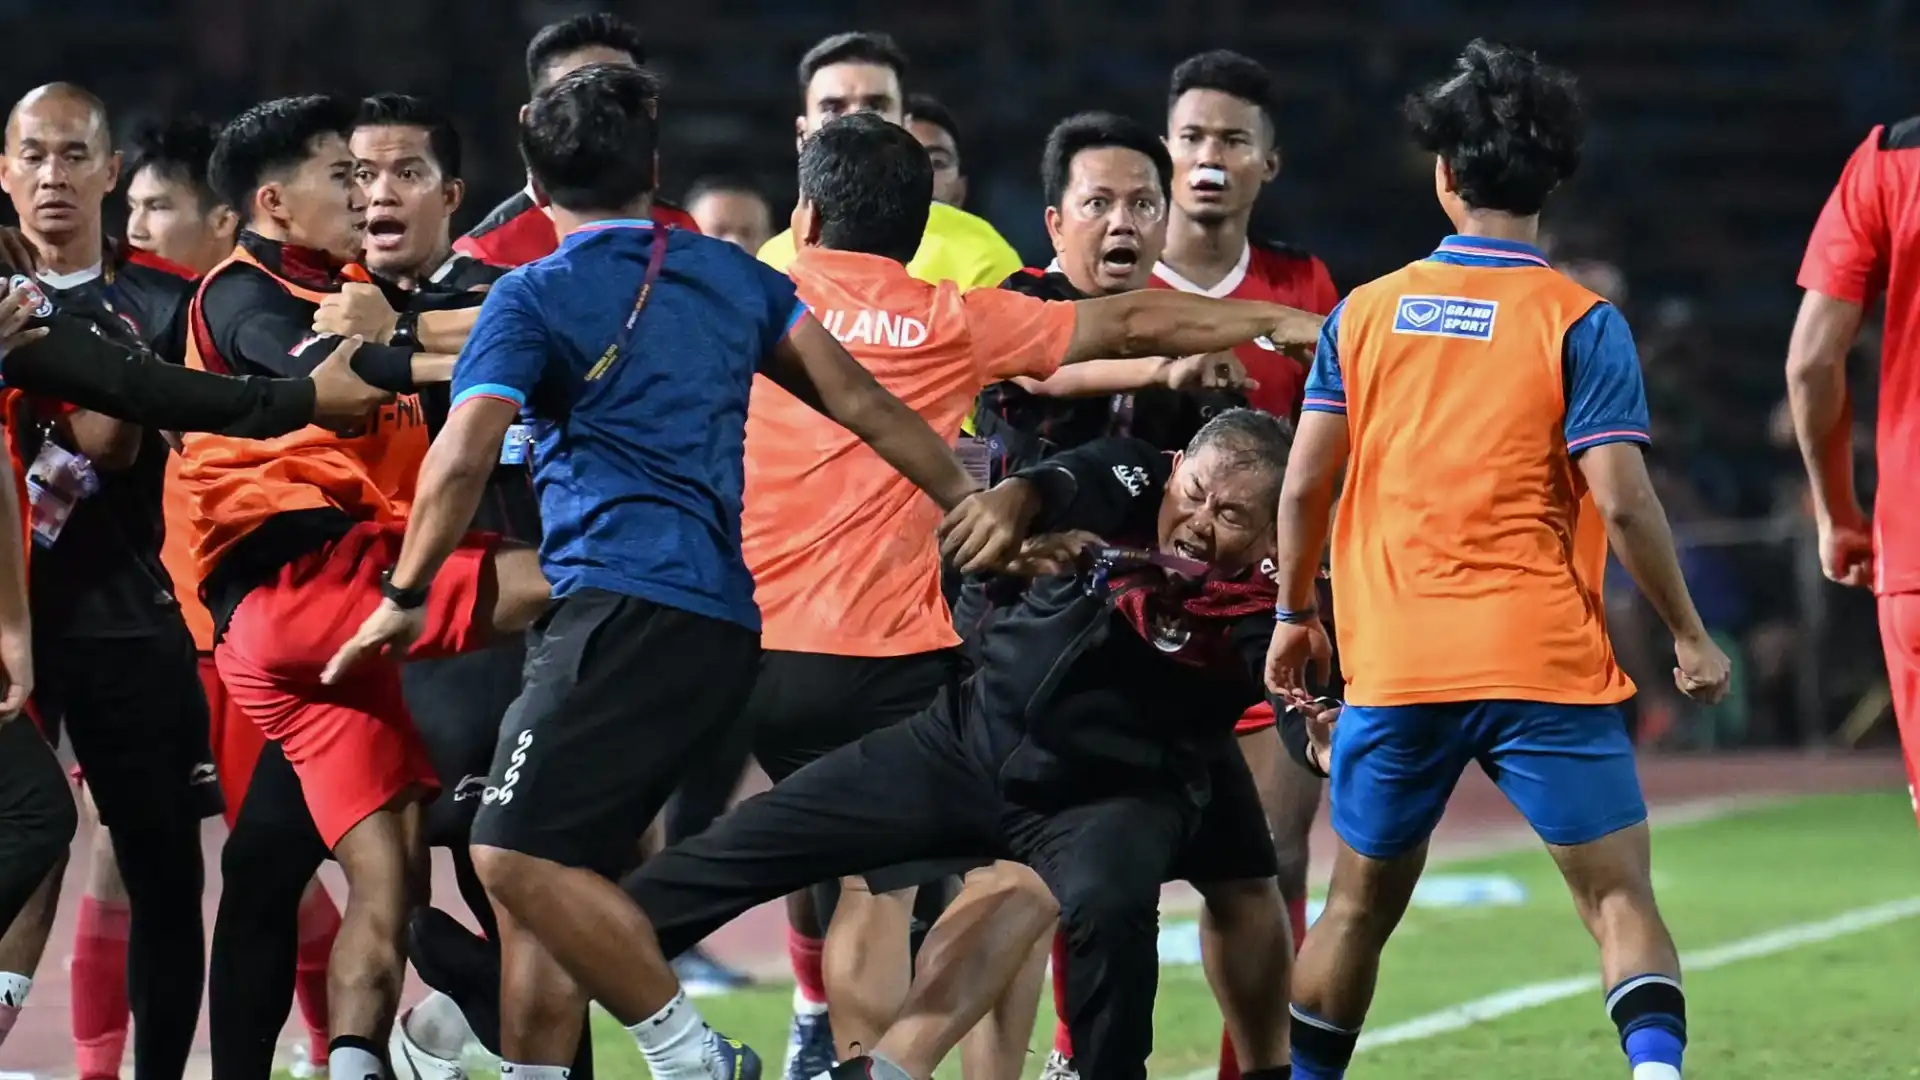 L'Indonesia ha vinto la medaglia d'oro battendo per 5-2 la Thailandia al termine di una partita nervosissima, finita ai supplementari